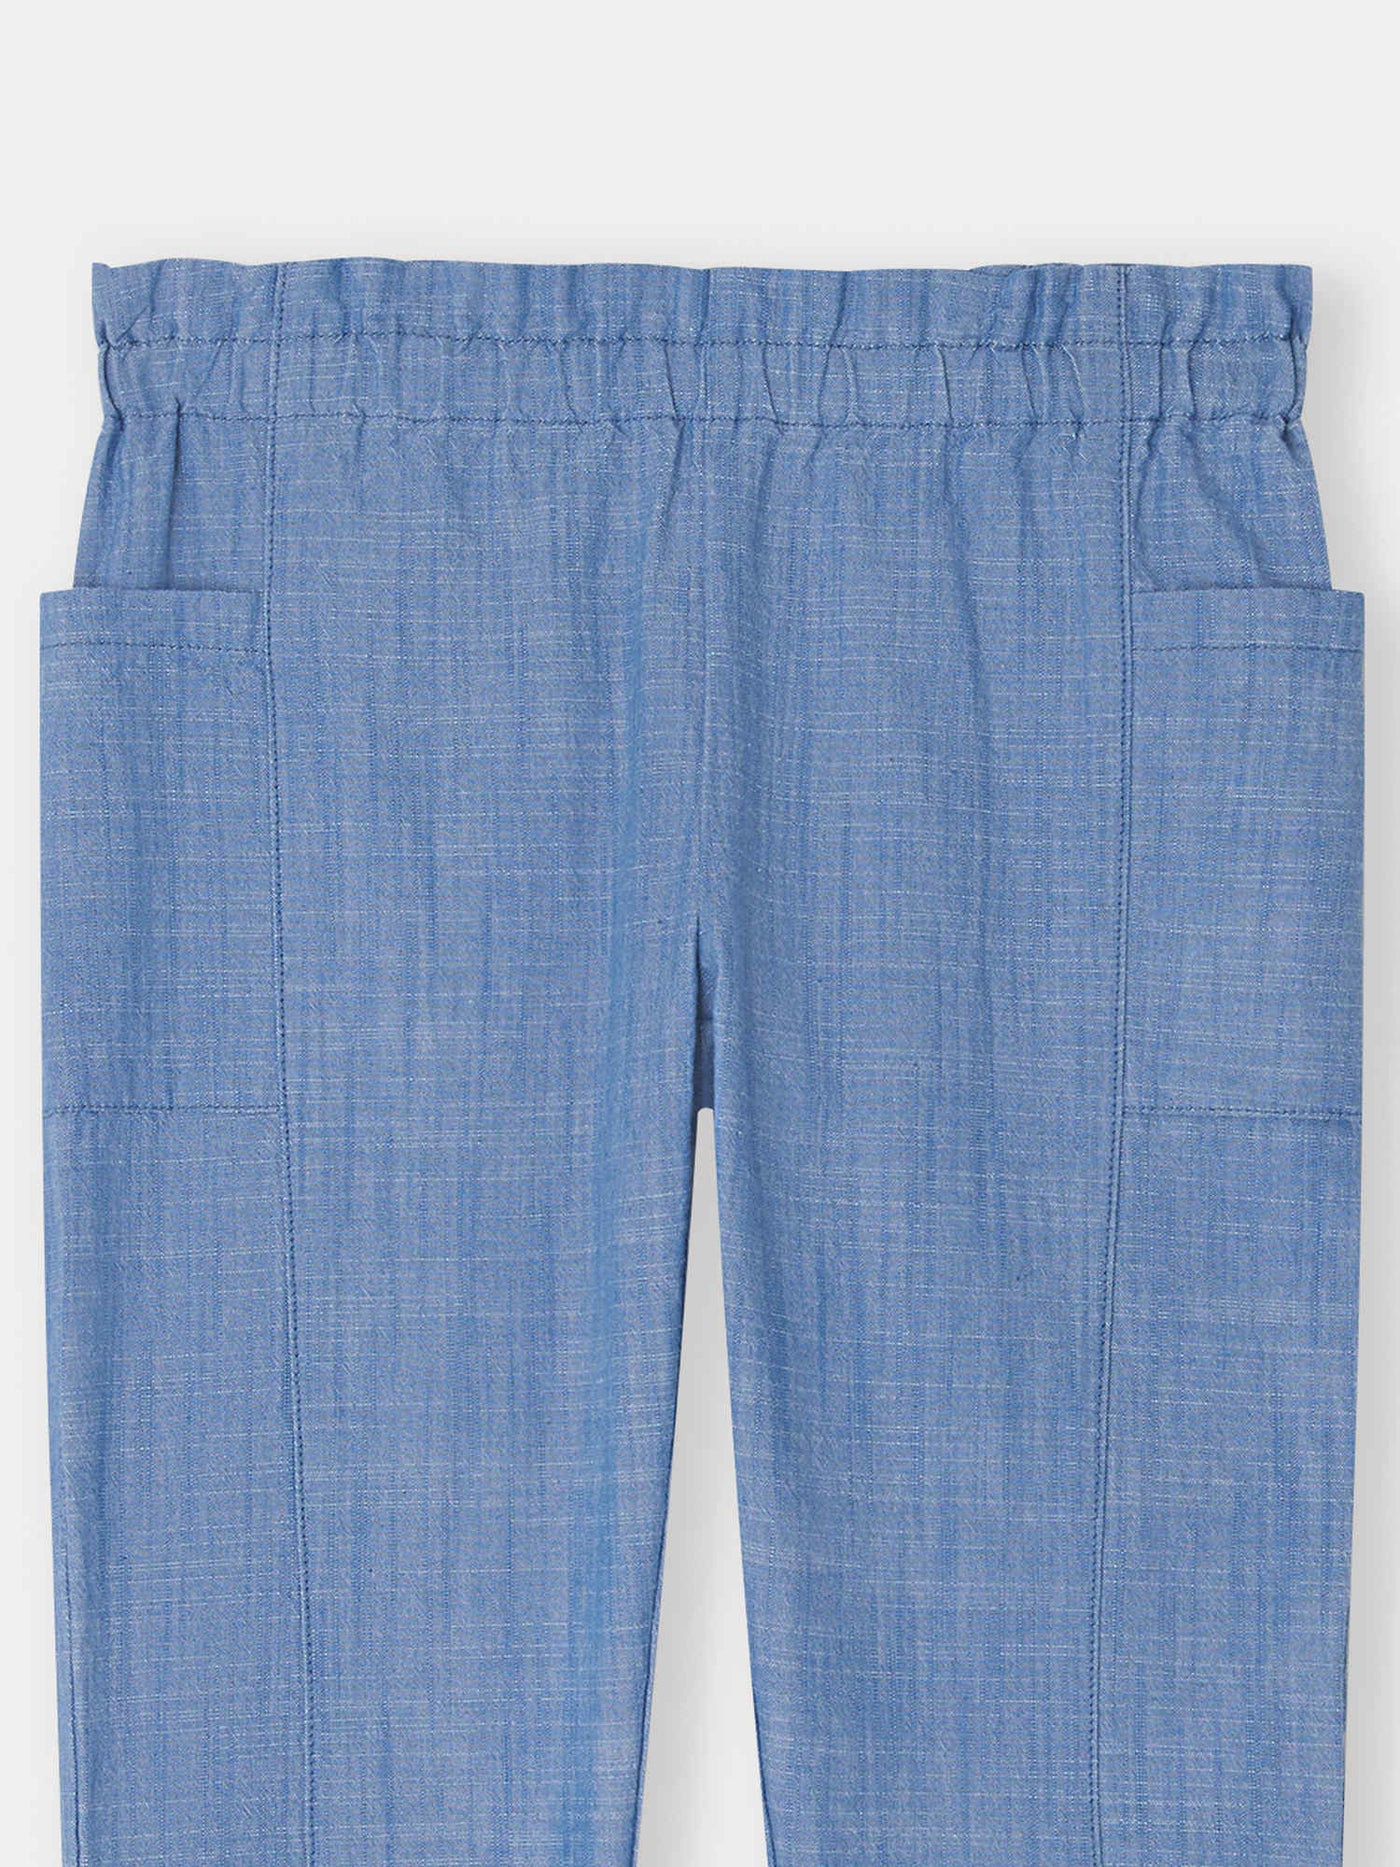 Pantalon Tiche bleu